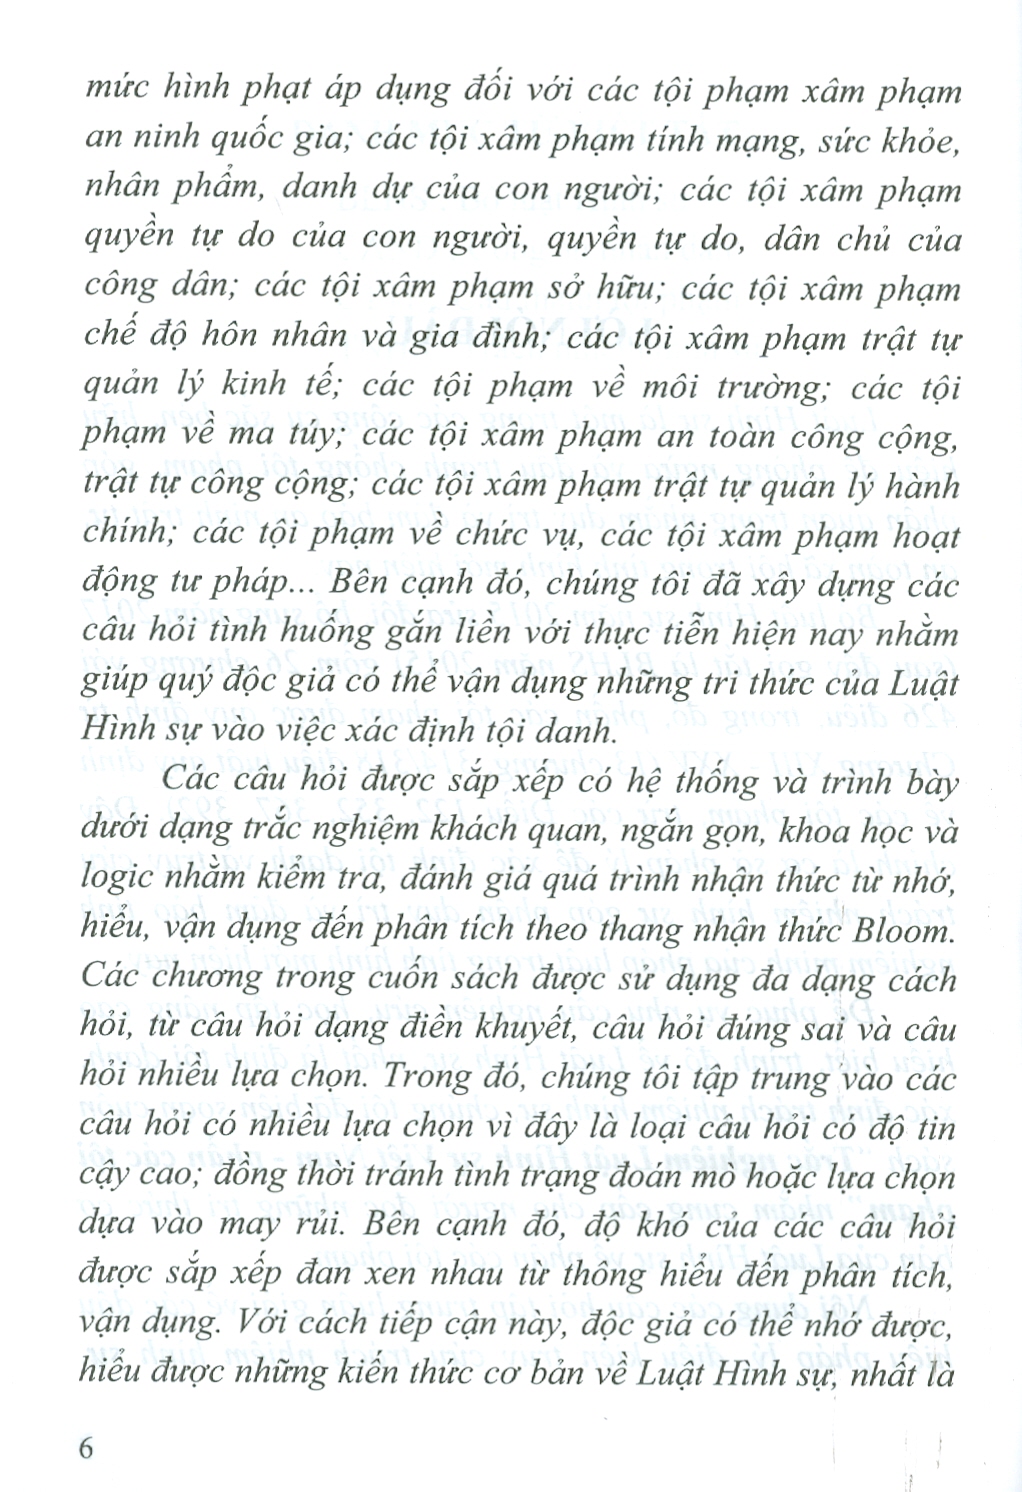 Trắc Nghiệm Luật Hình Sự Việt Nam - Phần Các Tội Phạm (Sách tham khảo; Tái bản có sửa chữa, bổ sung)